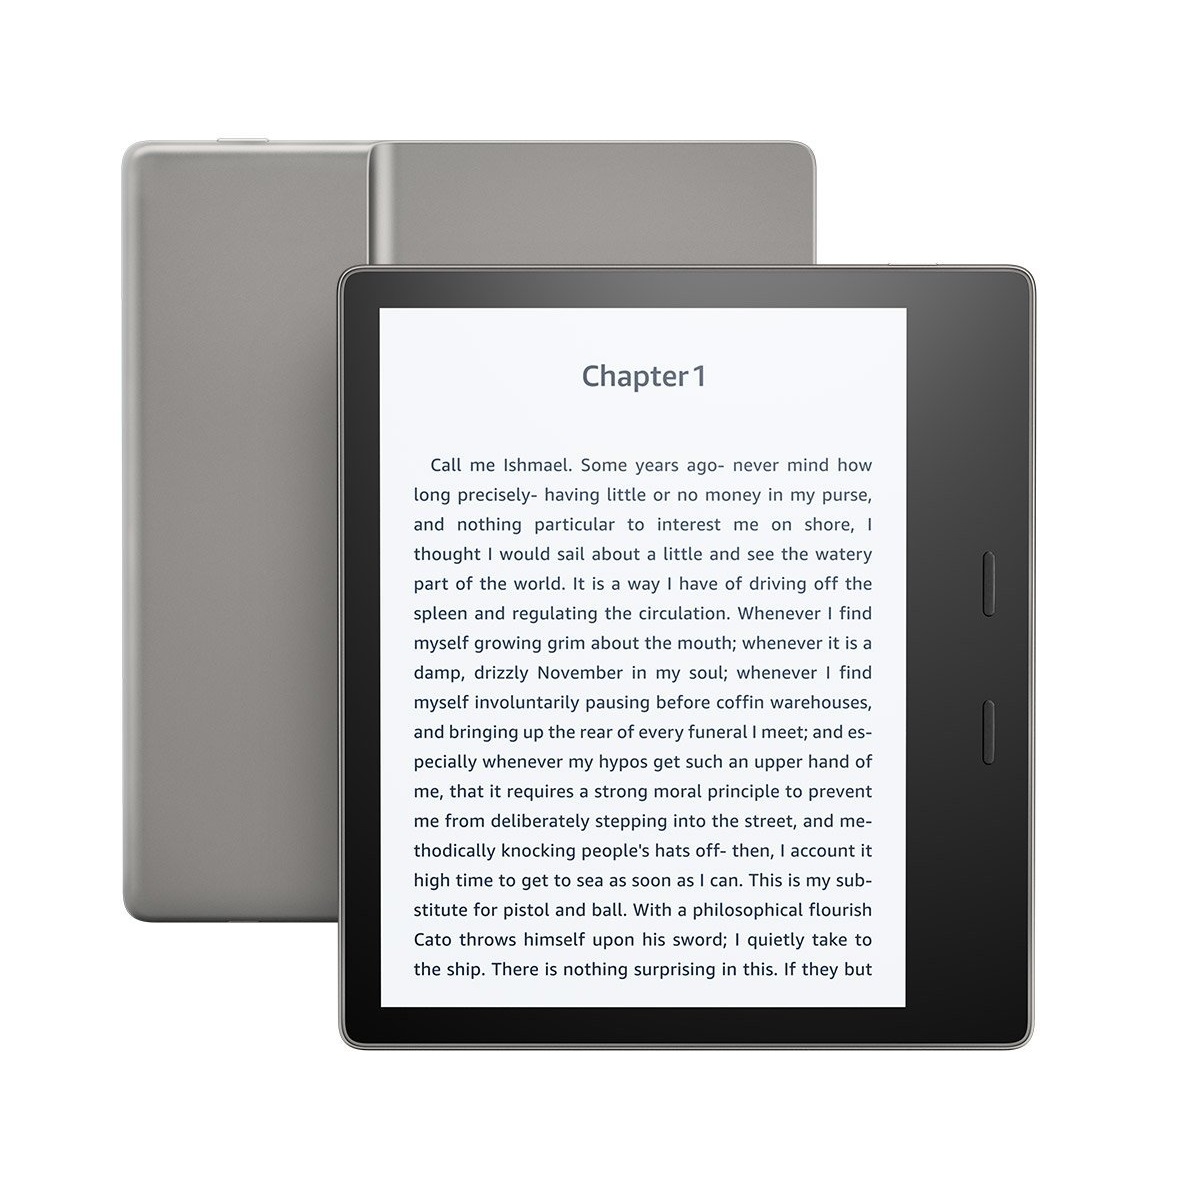 Sở hữu ngay Kindle Oasis 2 - 7 inch đã qua trải qua qua trình tái chế, được bán với đầy đủ phụ kiện giống như máy mới. Với màn hình độ phân giải cao và chức năng đa dụng thú vị, Oasis 2 sẽ là cặp đôi tuyệt vời cho những ai yêu thích đọc sách.